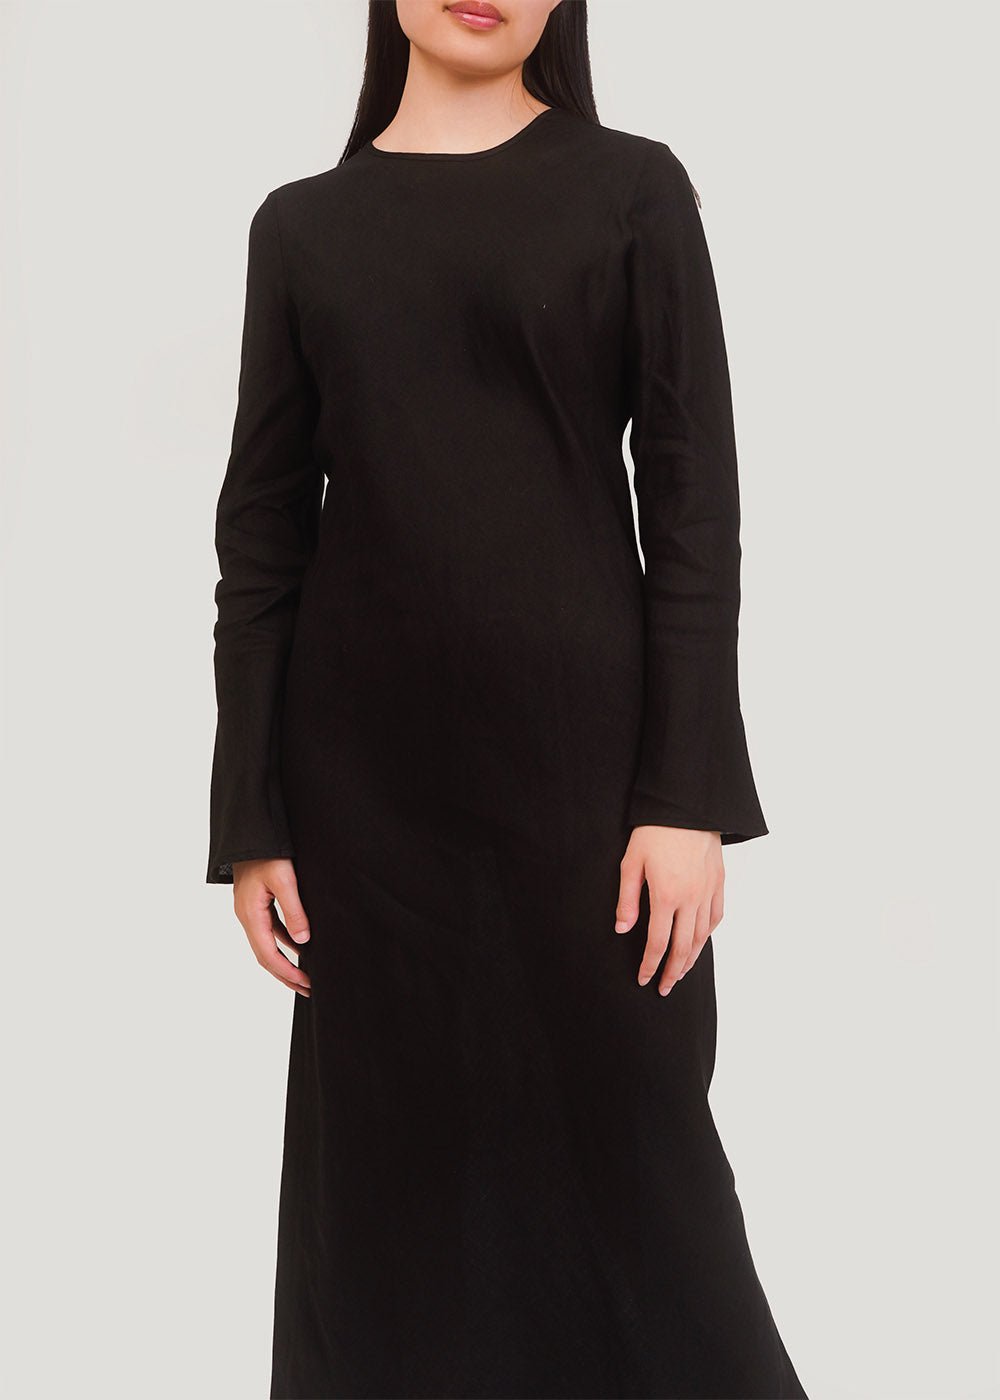 Baserange Black Dydine Longsleeve Dress - New Classics Studios Sustainable Ethical Fashion Canada